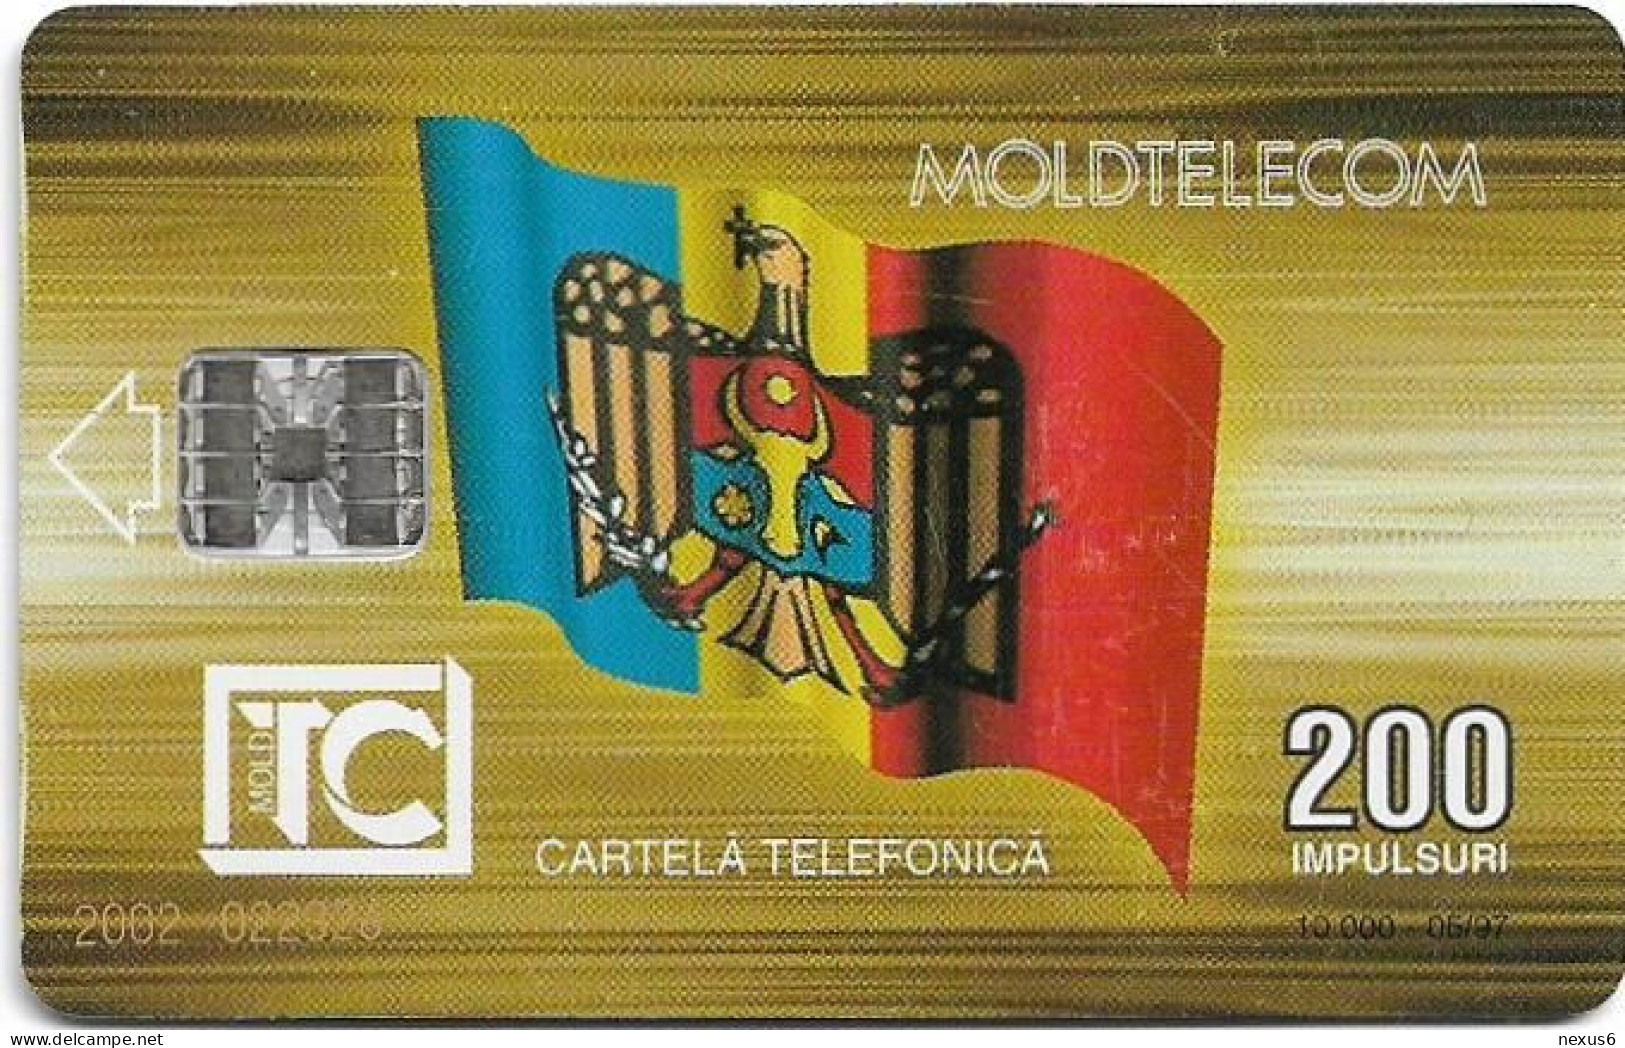 Moldova - Moldtelecom - Flag 3rd Issue, SC7, 05.1997, 200U, 10.000ex, Used - Moldawien (Moldau)